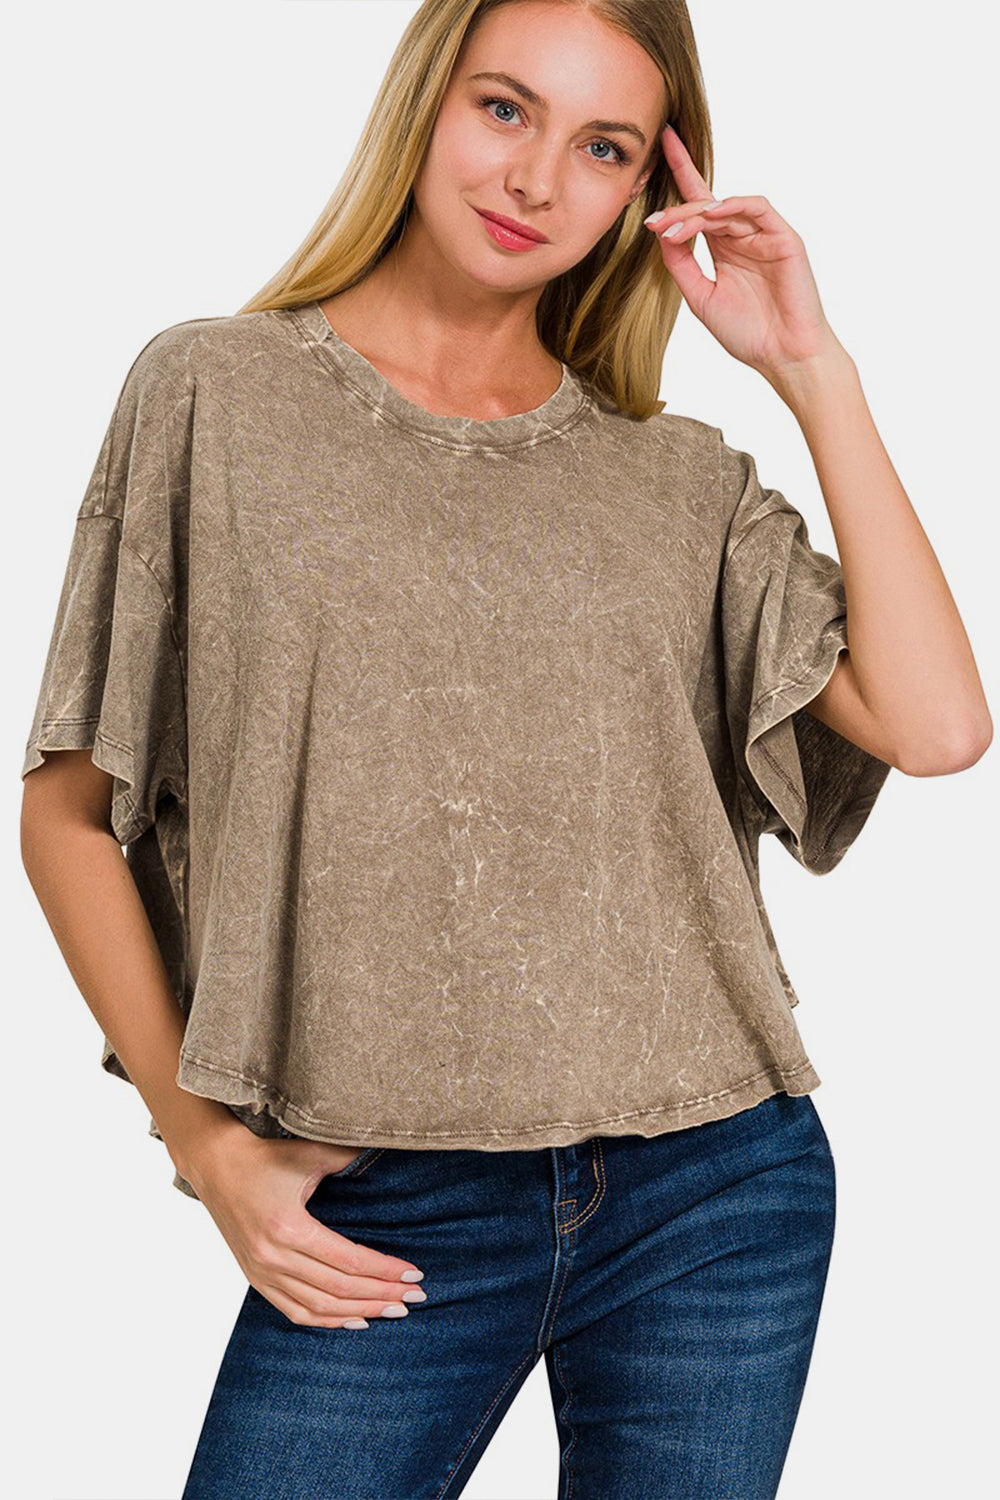 Zenana Washed Round Neck Drop Shoulder Cropped T-Shirt Trendsi